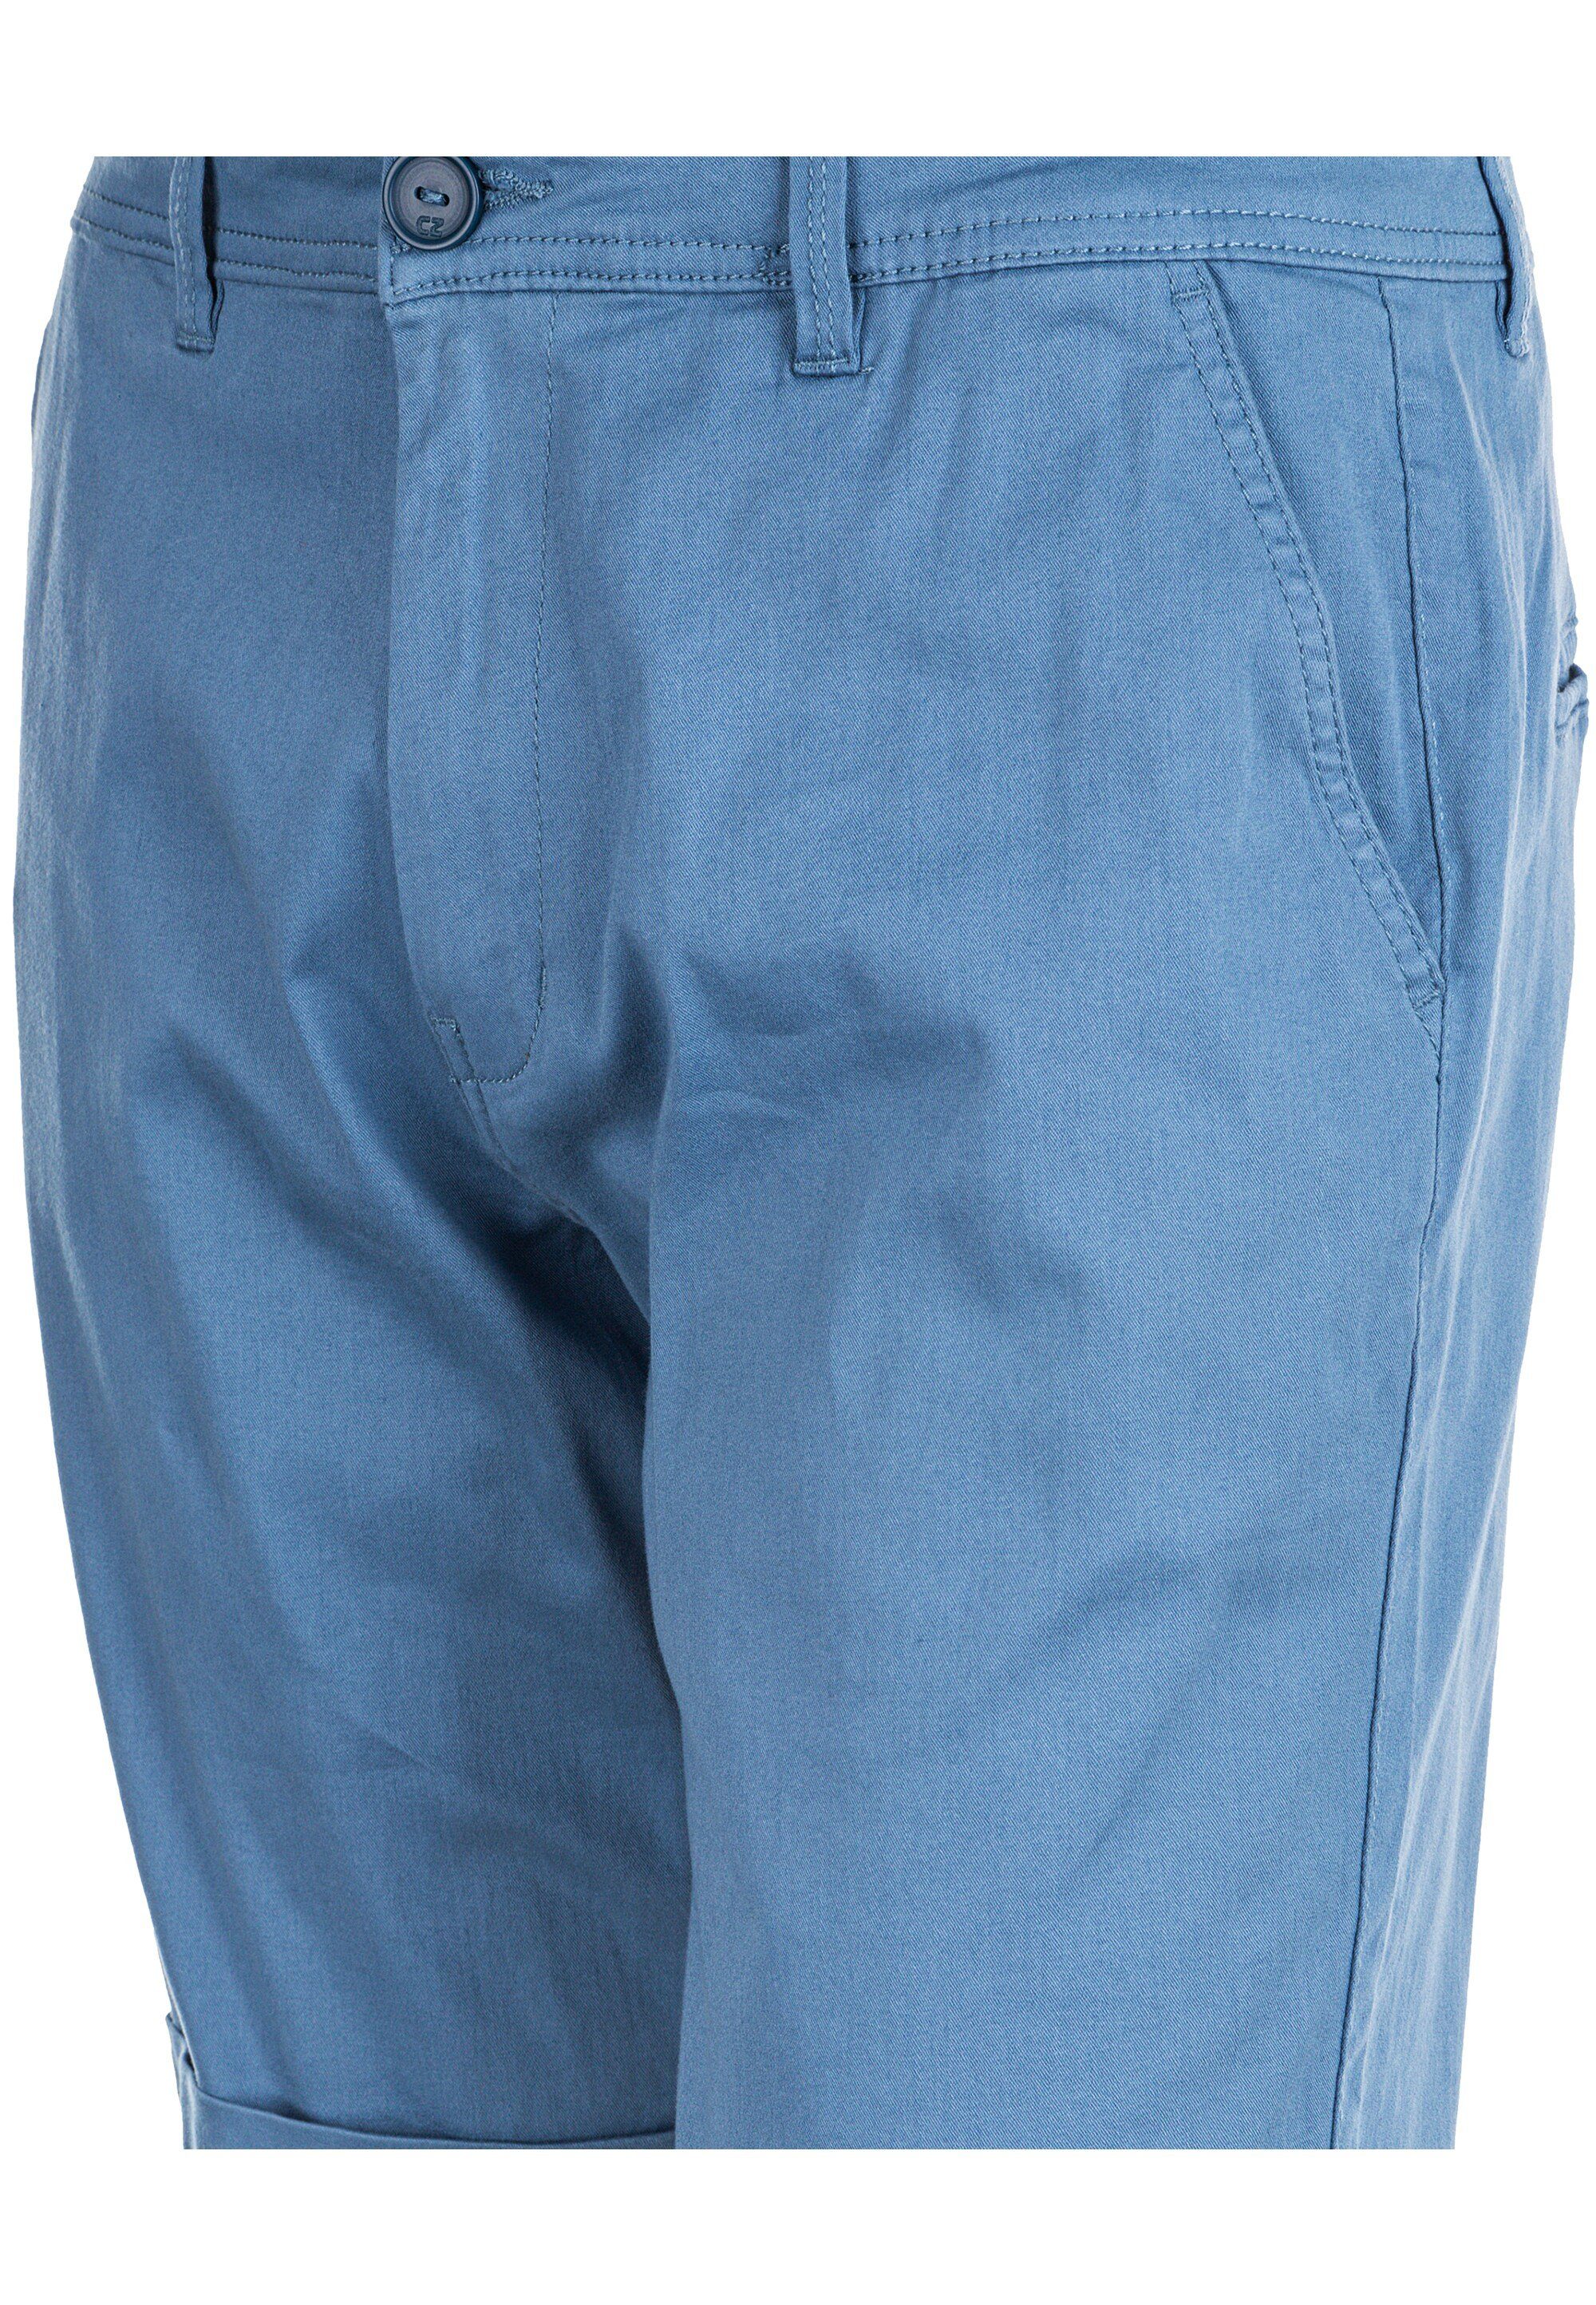 CRUZ praktischen mit Jerryne Seitentaschen hellblau Shorts